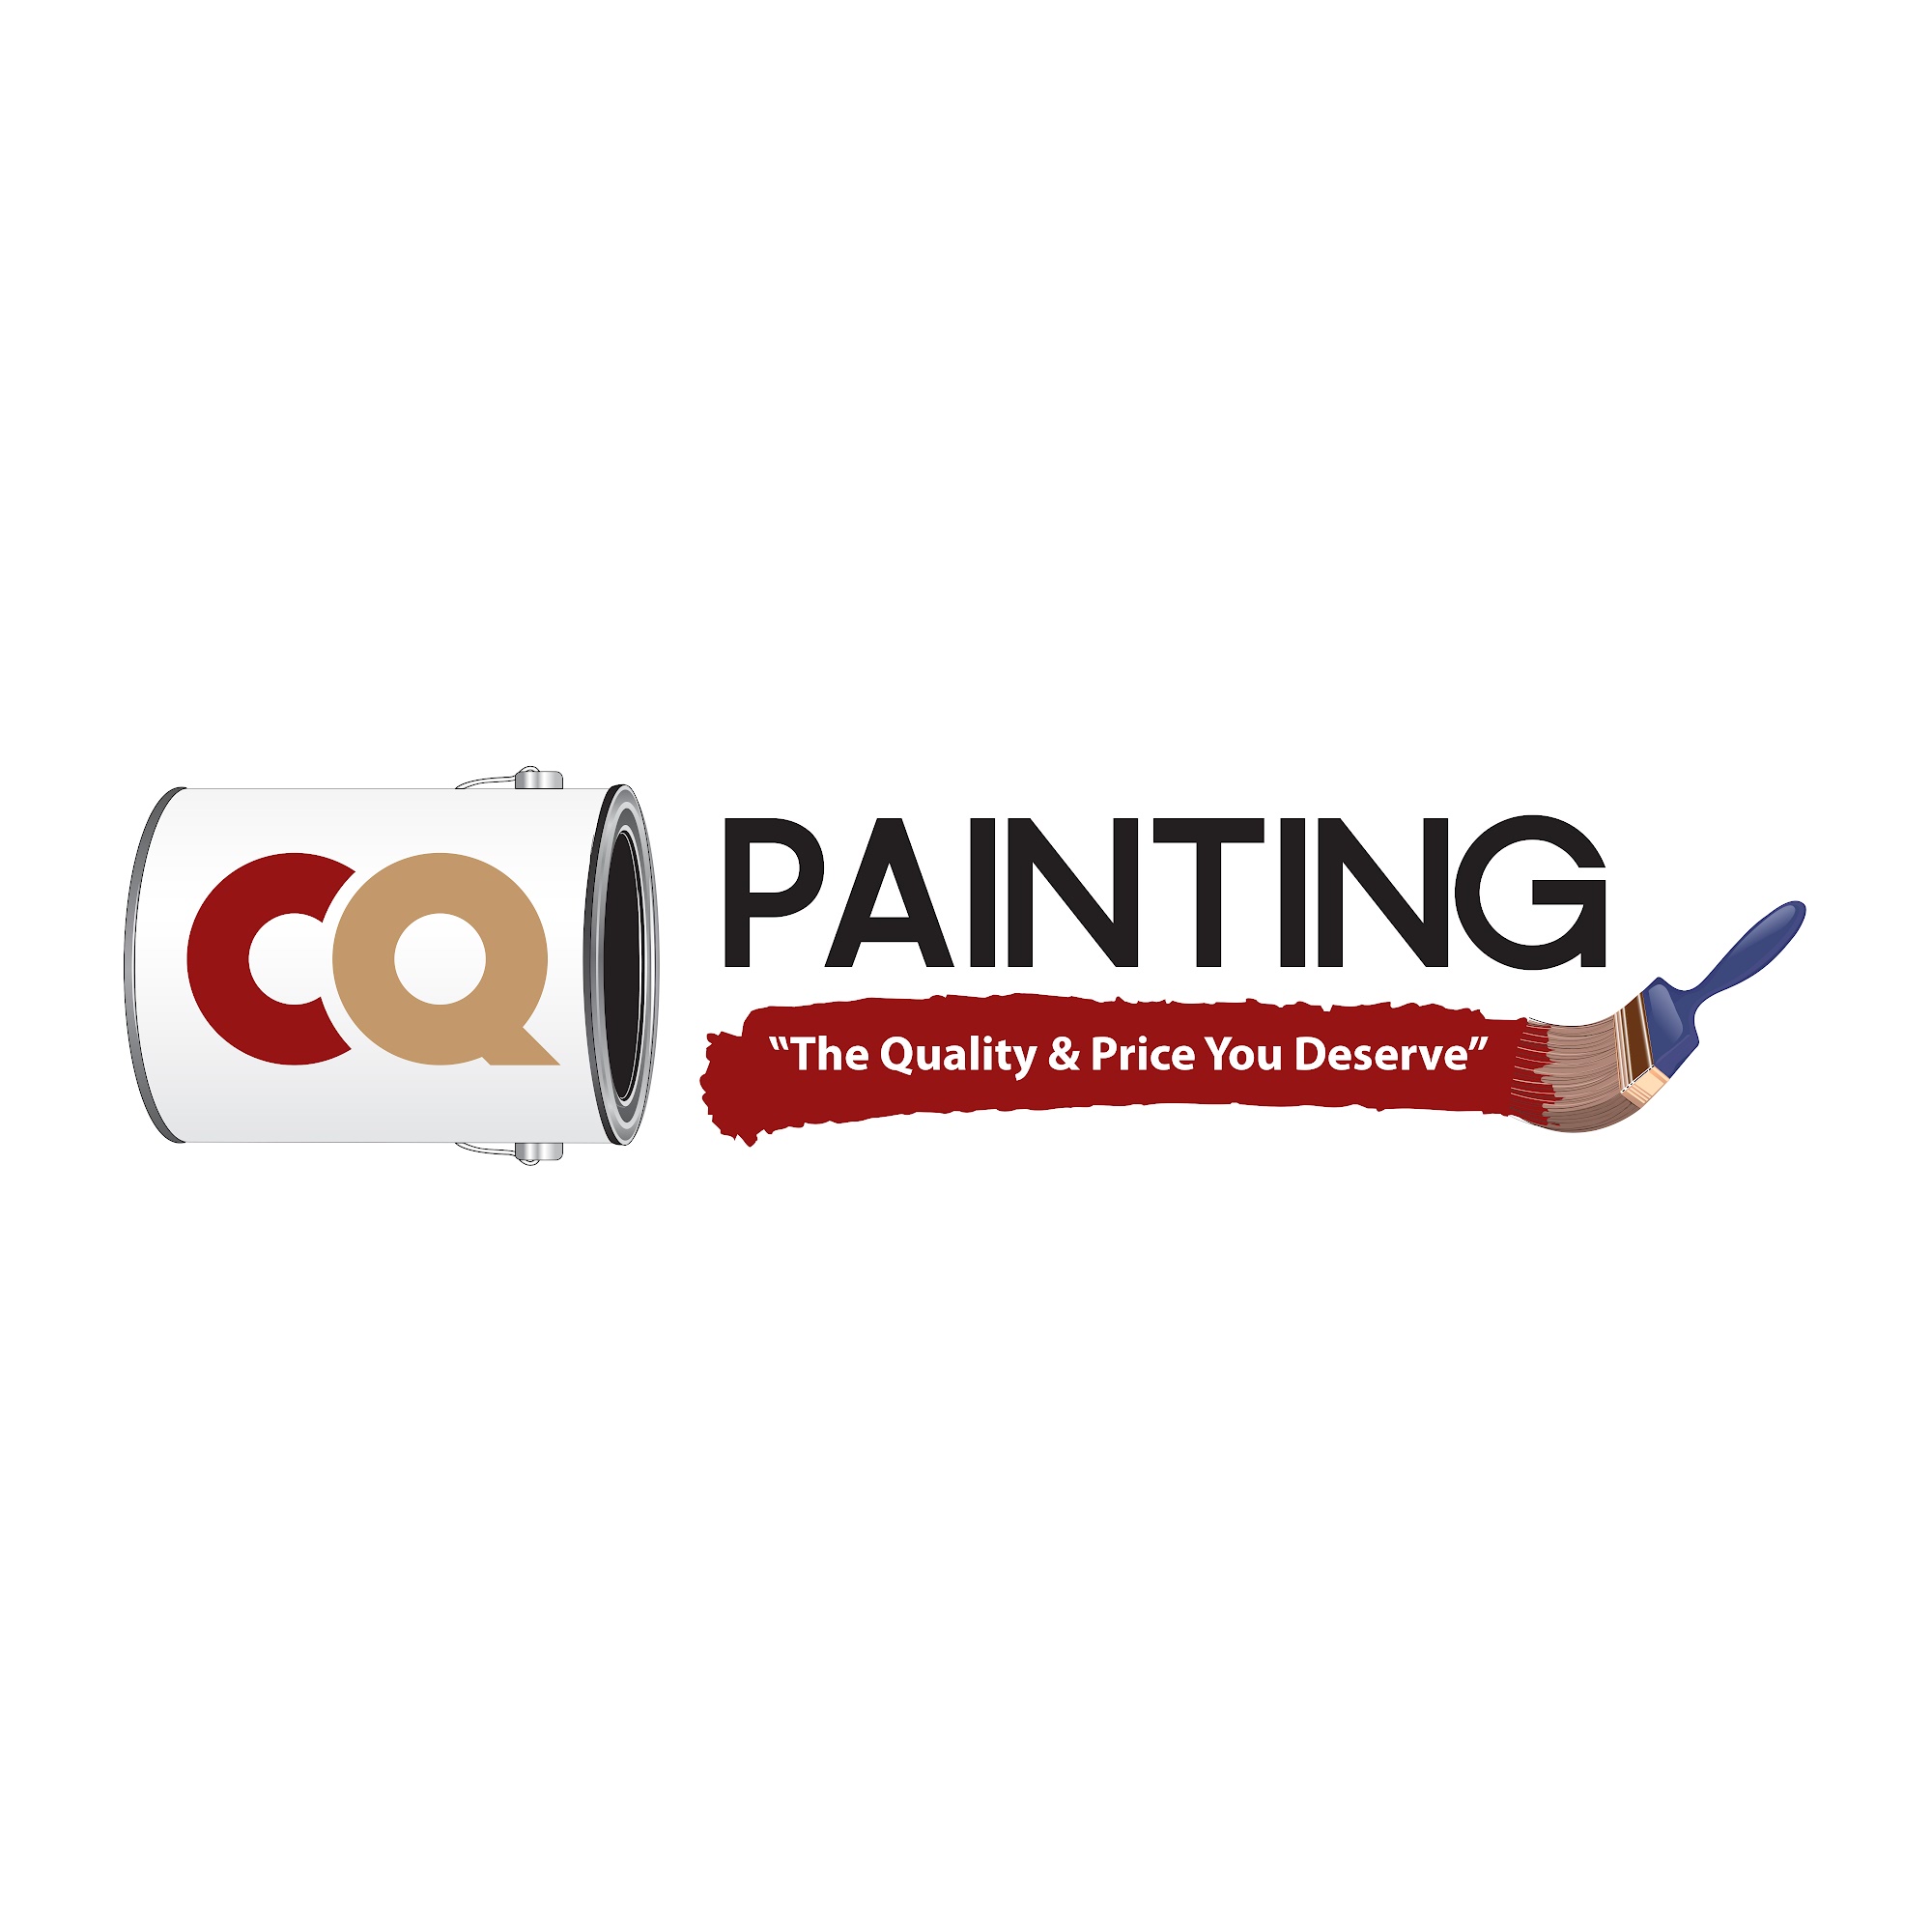 CQ Painting 372 W Main St, Hainesville Illinois 60073